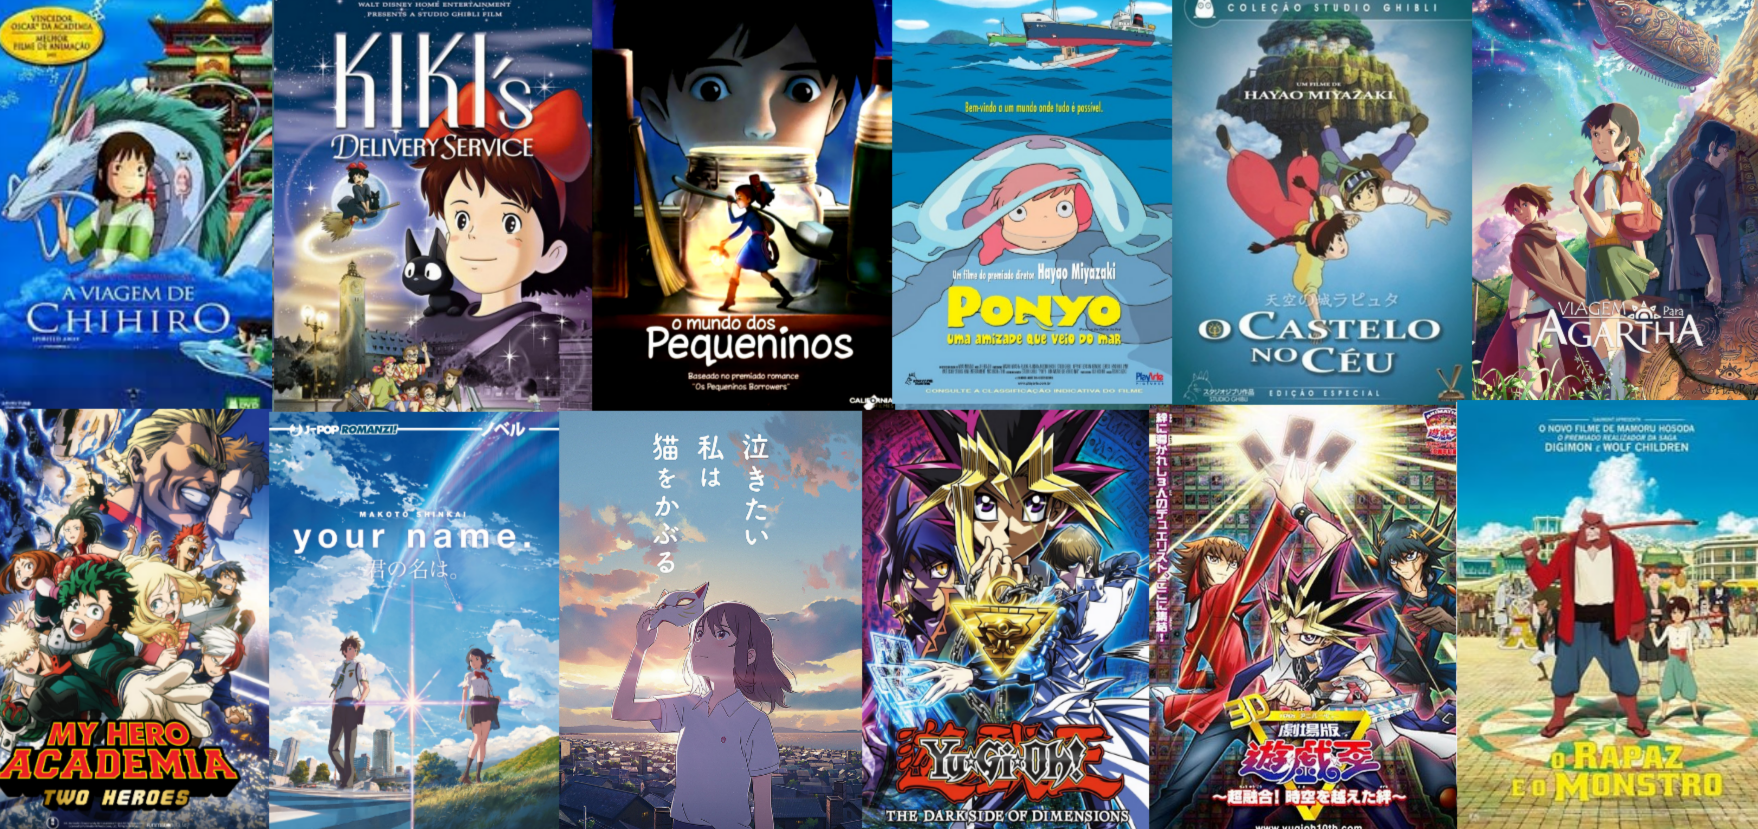 Personagens Com os Mesmos Dubladores! on X: 🚨 Animes dublados da Anime  Onegai provavelmente vindo aí! 🚨 O streaming Anime Onegai anunciou numa  live que irá distribuir dublagens brasileiras de seus animes